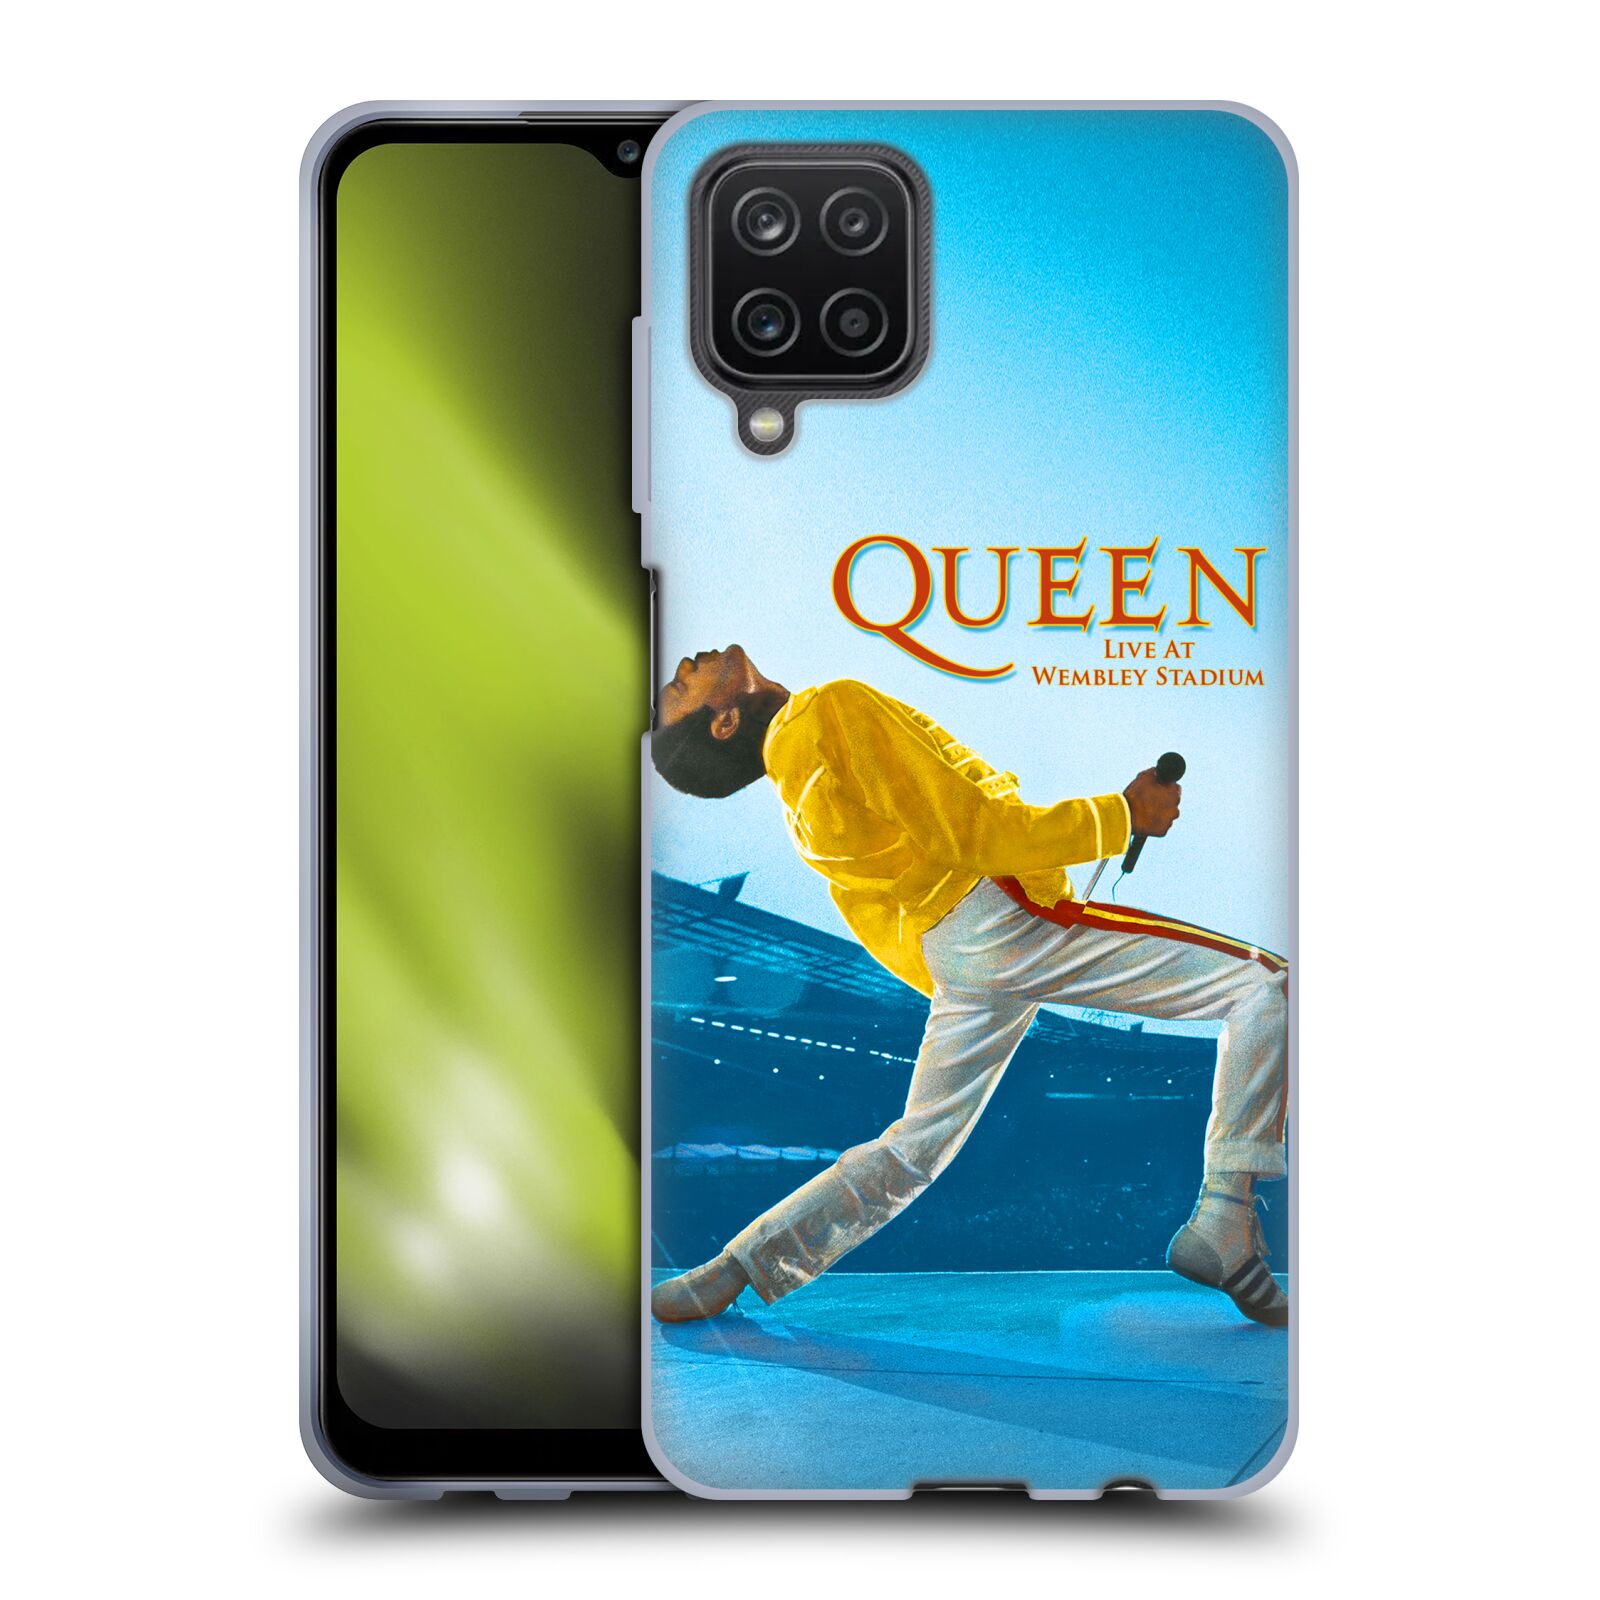 Silikonové pouzdro na mobil Samsung Galaxy A12 - Head Case - Queen - Freddie Mercury (Silikonový kryt, obal, pouzdro na mobilní telefon Samsung Galaxy A12 s motivem Queen - Freddie Mercury)